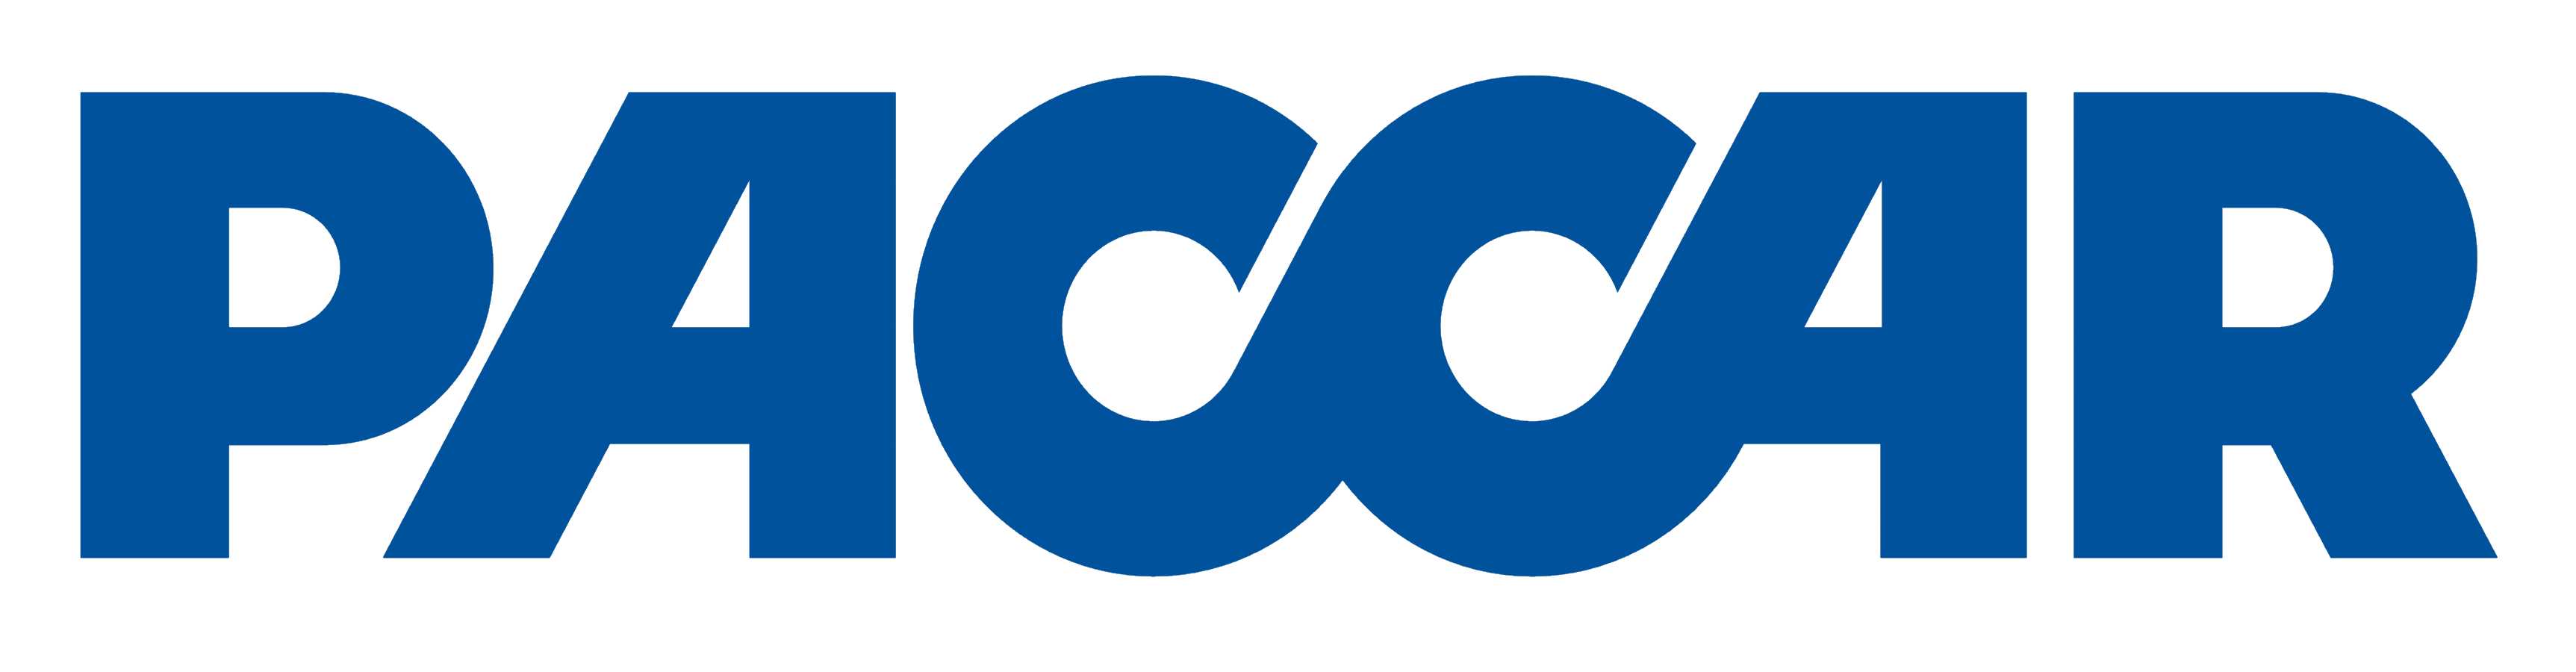 PACCAR Logo - Paccar – Logos Download